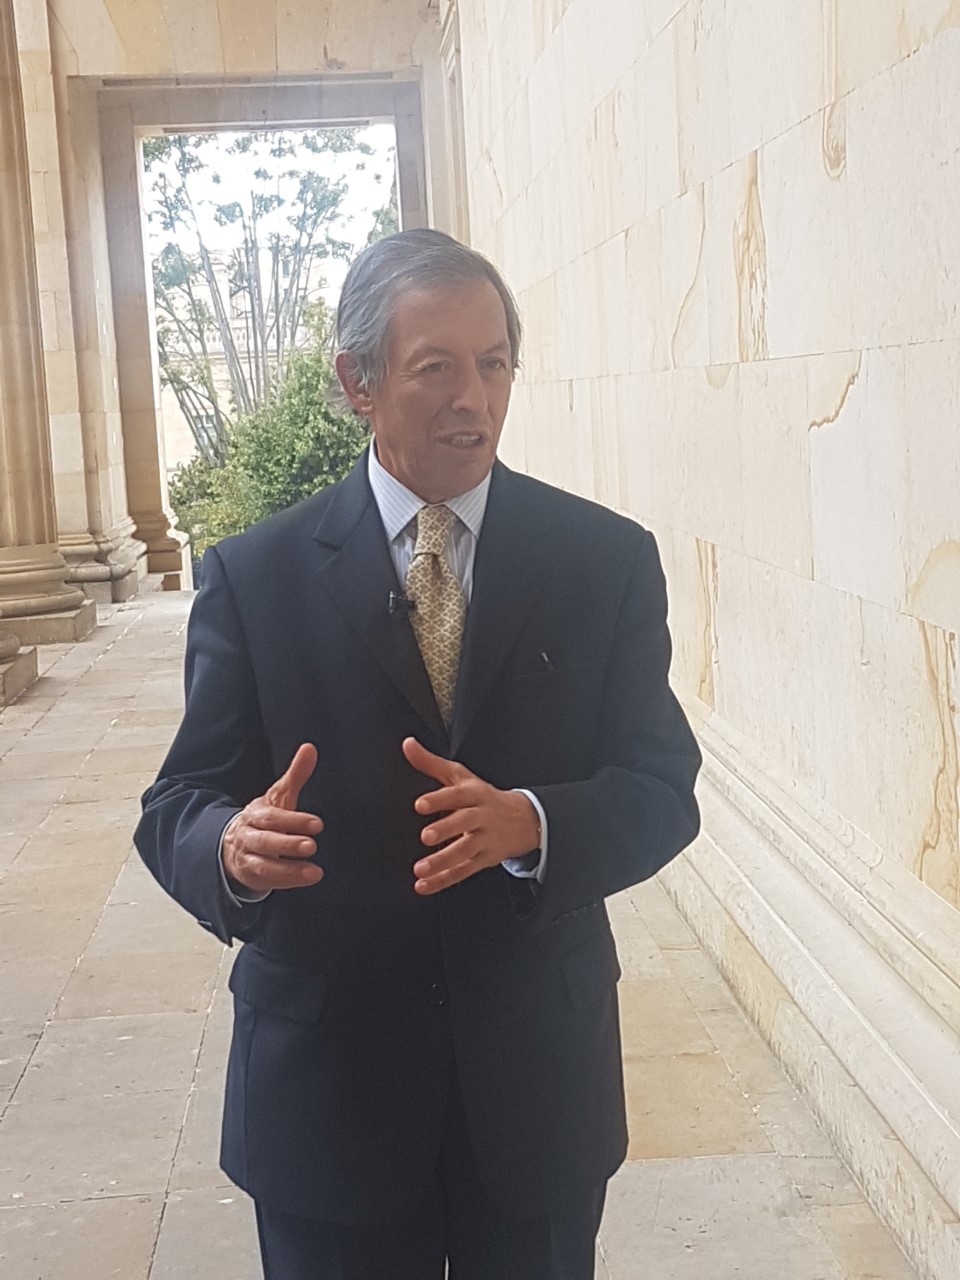 Telésforo Pedraza respalda propuesta para que el congreso sesione de lunes a vierne